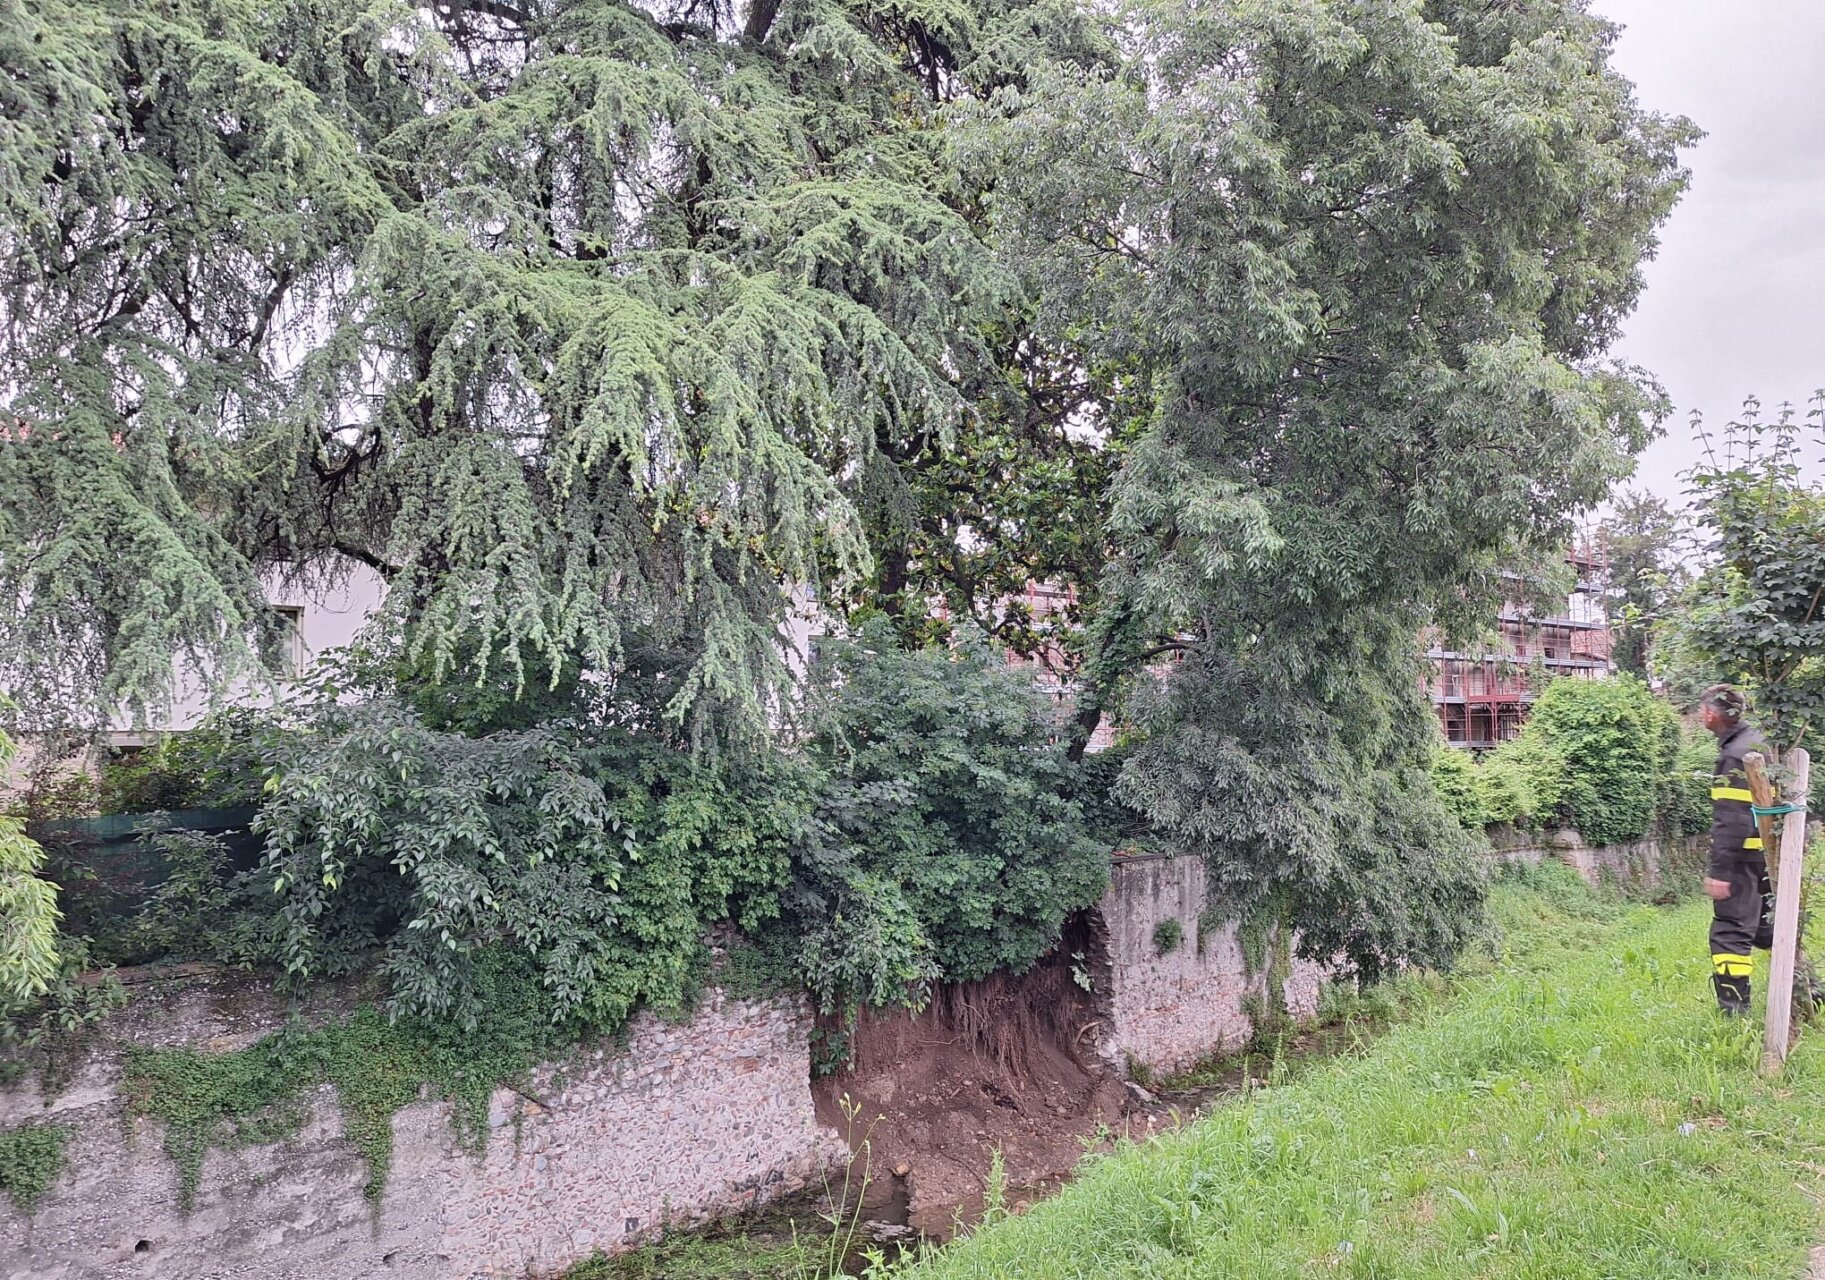 albero inclinato martinengo 1